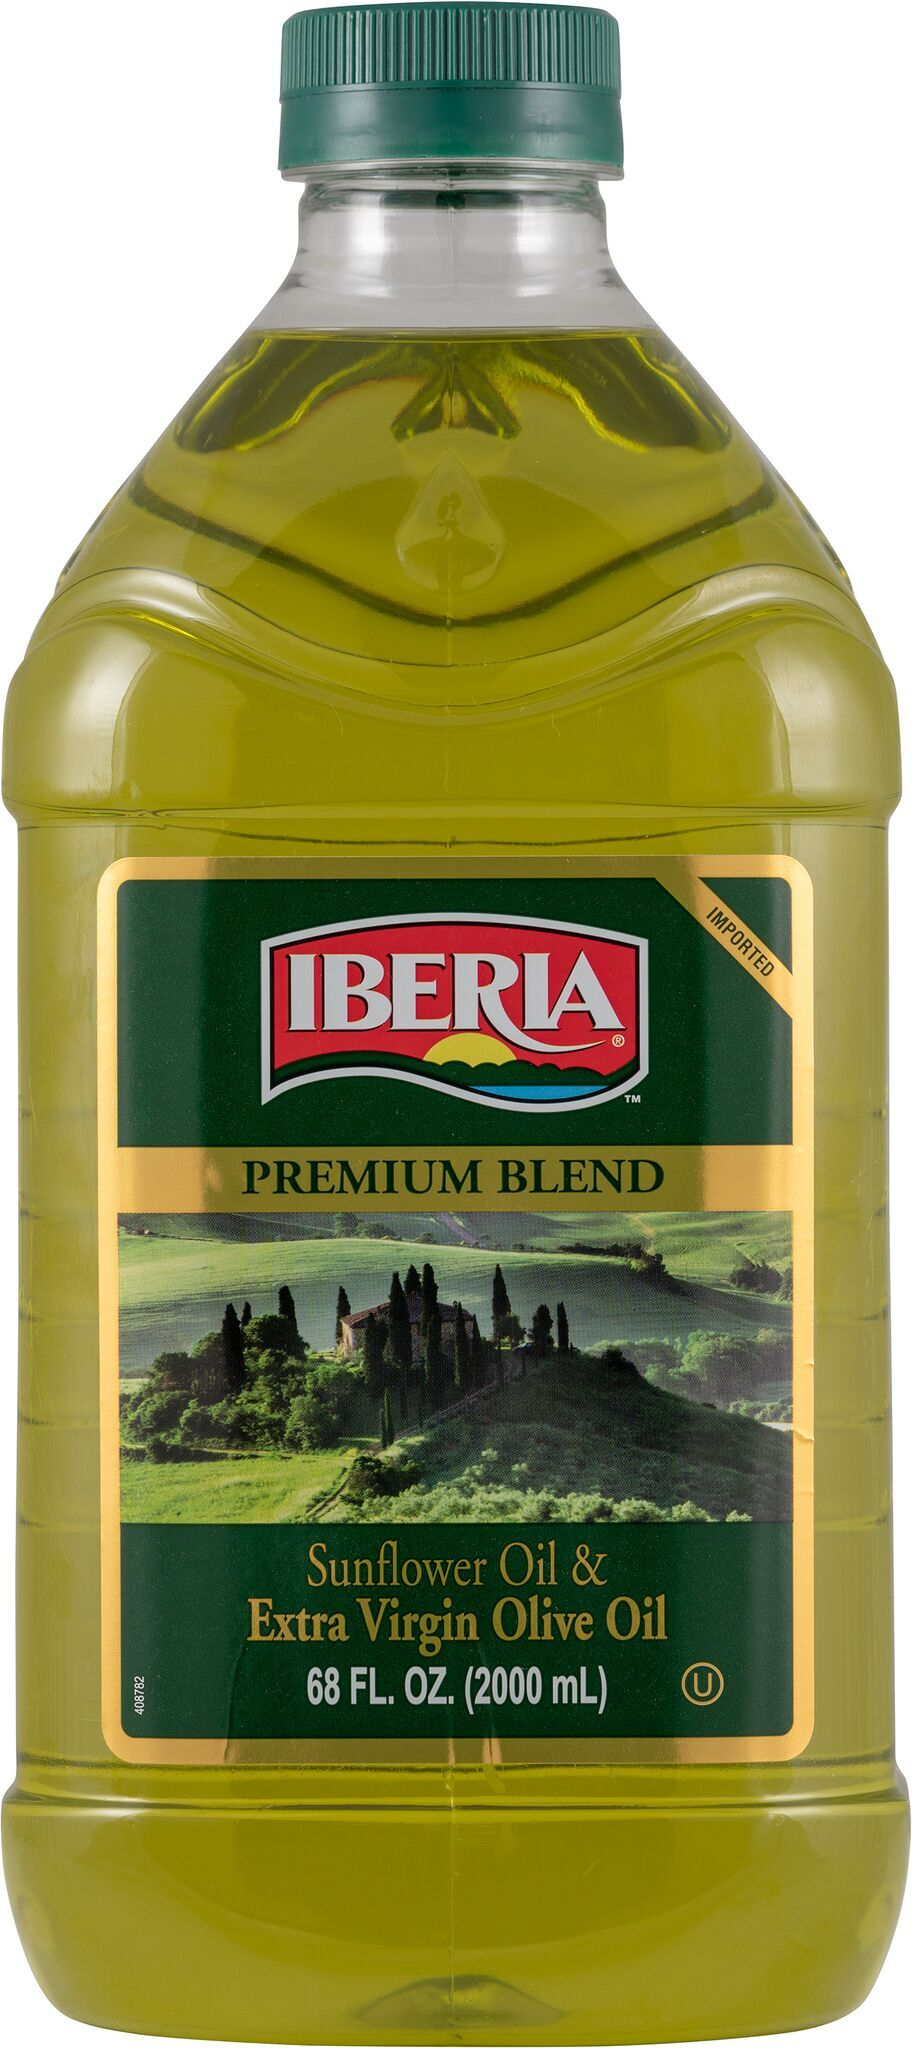 Iberia Extra Virgin Olive Oil & Sunflower Oil, 68 oz - image 1 of 2